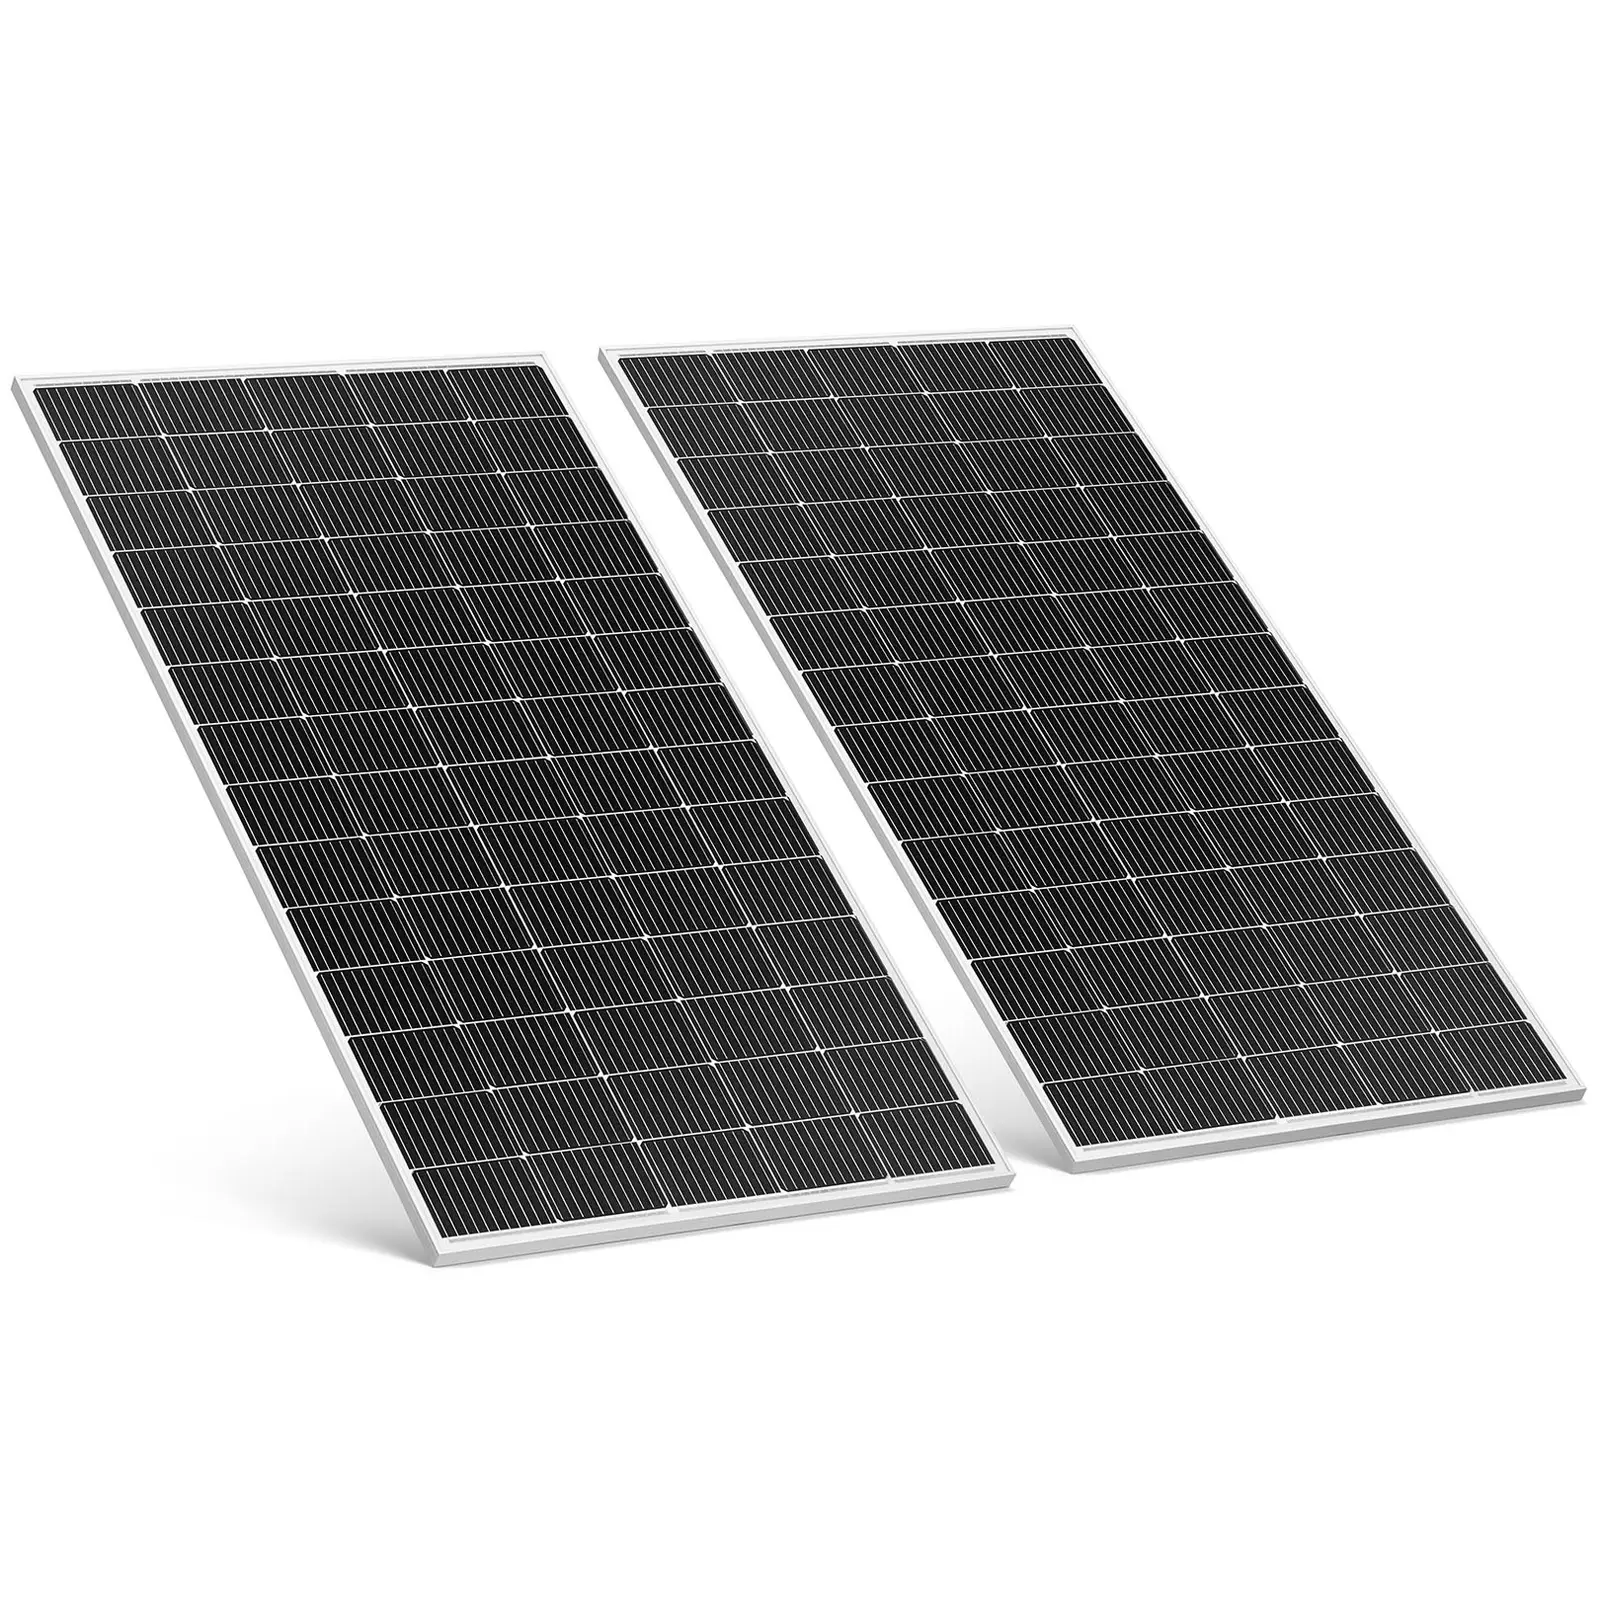 Solceller til altan - 600 W - monokrystallinske solceller - komplet sæt tilslutningsklart